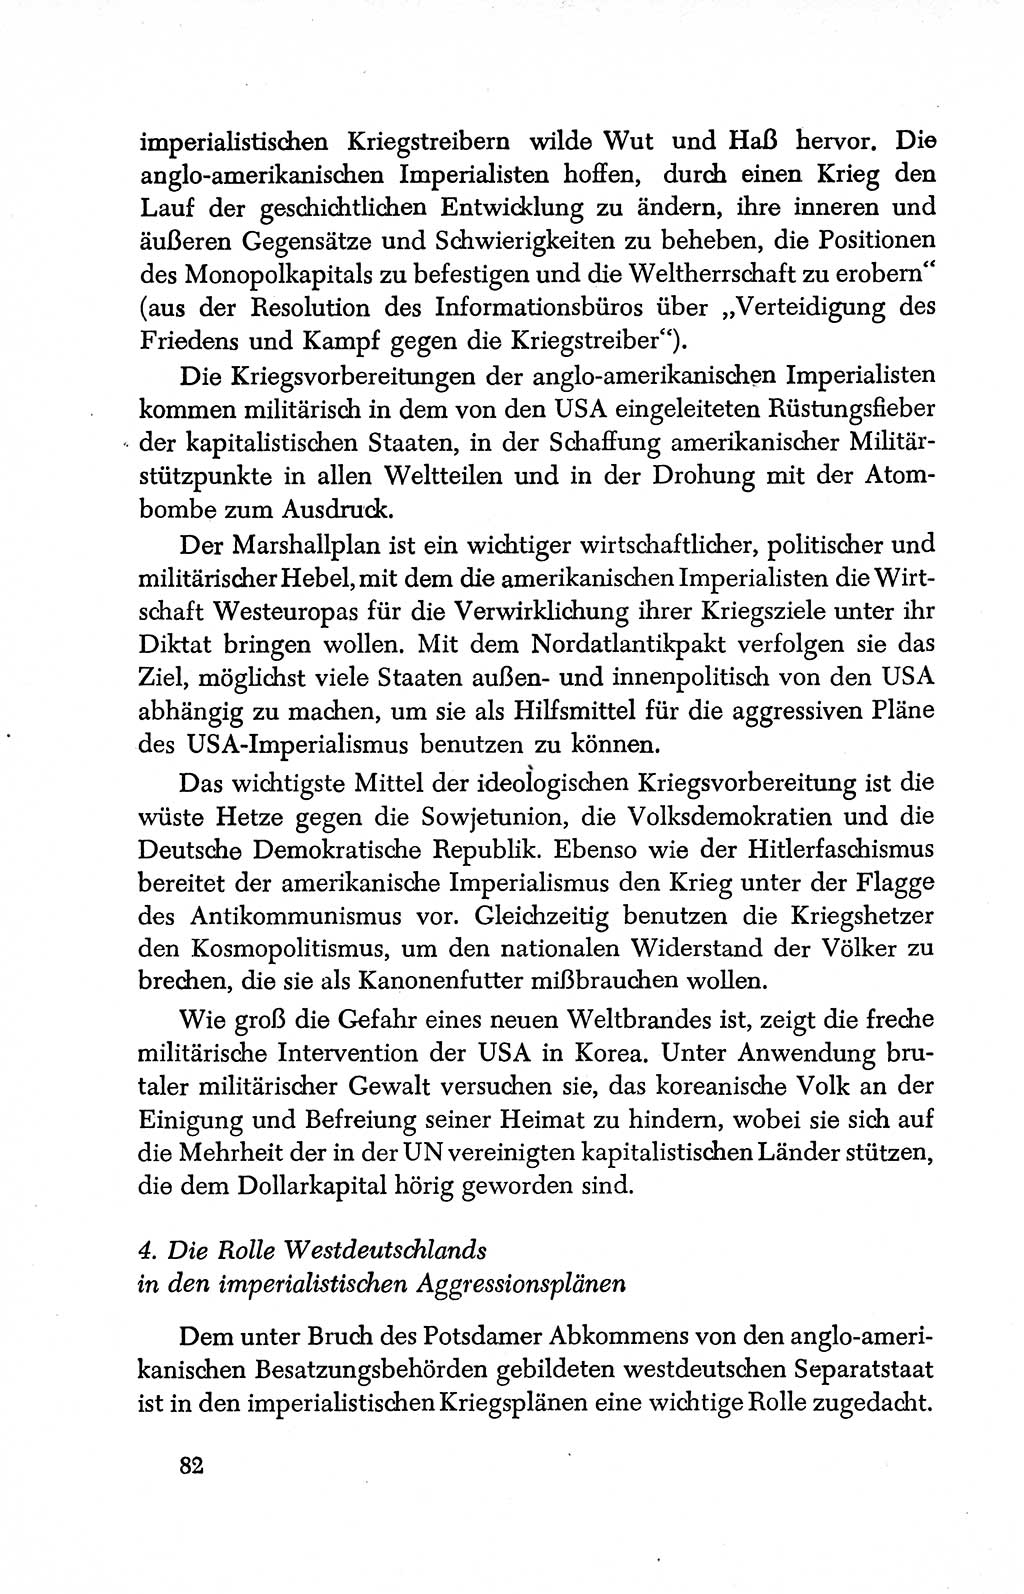 Dokumente der Sozialistischen Einheitspartei Deutschlands (SED) [Deutsche Demokratische Republik (DDR)] 1950-1952, Seite 82 (Dok. SED DDR 1950-1952, S. 82)